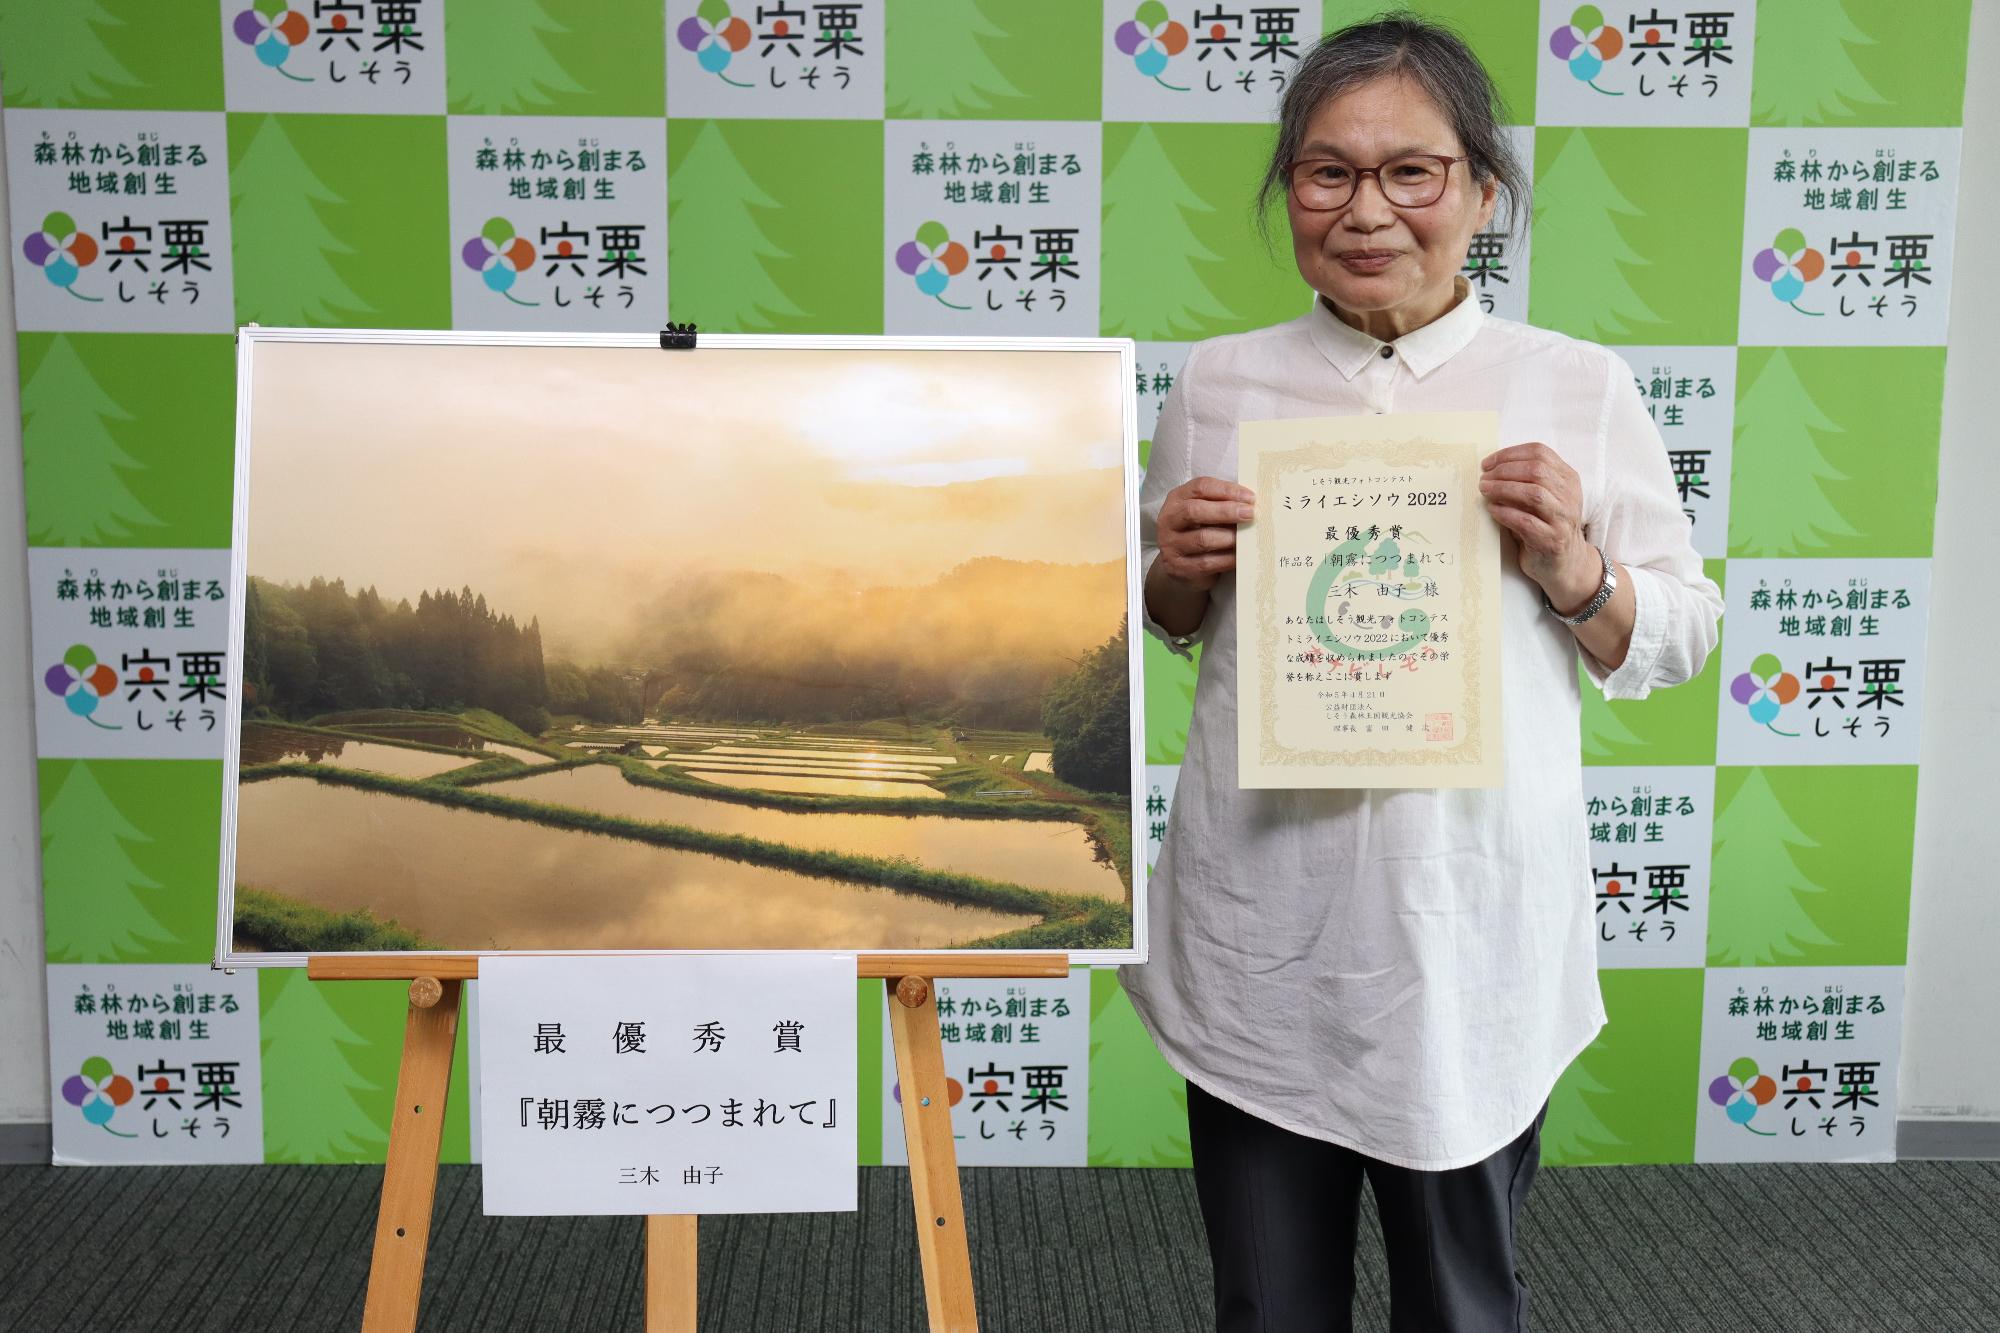 観光協会フォトコンテスト「ミライエシソウ2022」最優秀作品の隣に受賞者の三木さん賞状を手に正面を向いて立っている写真